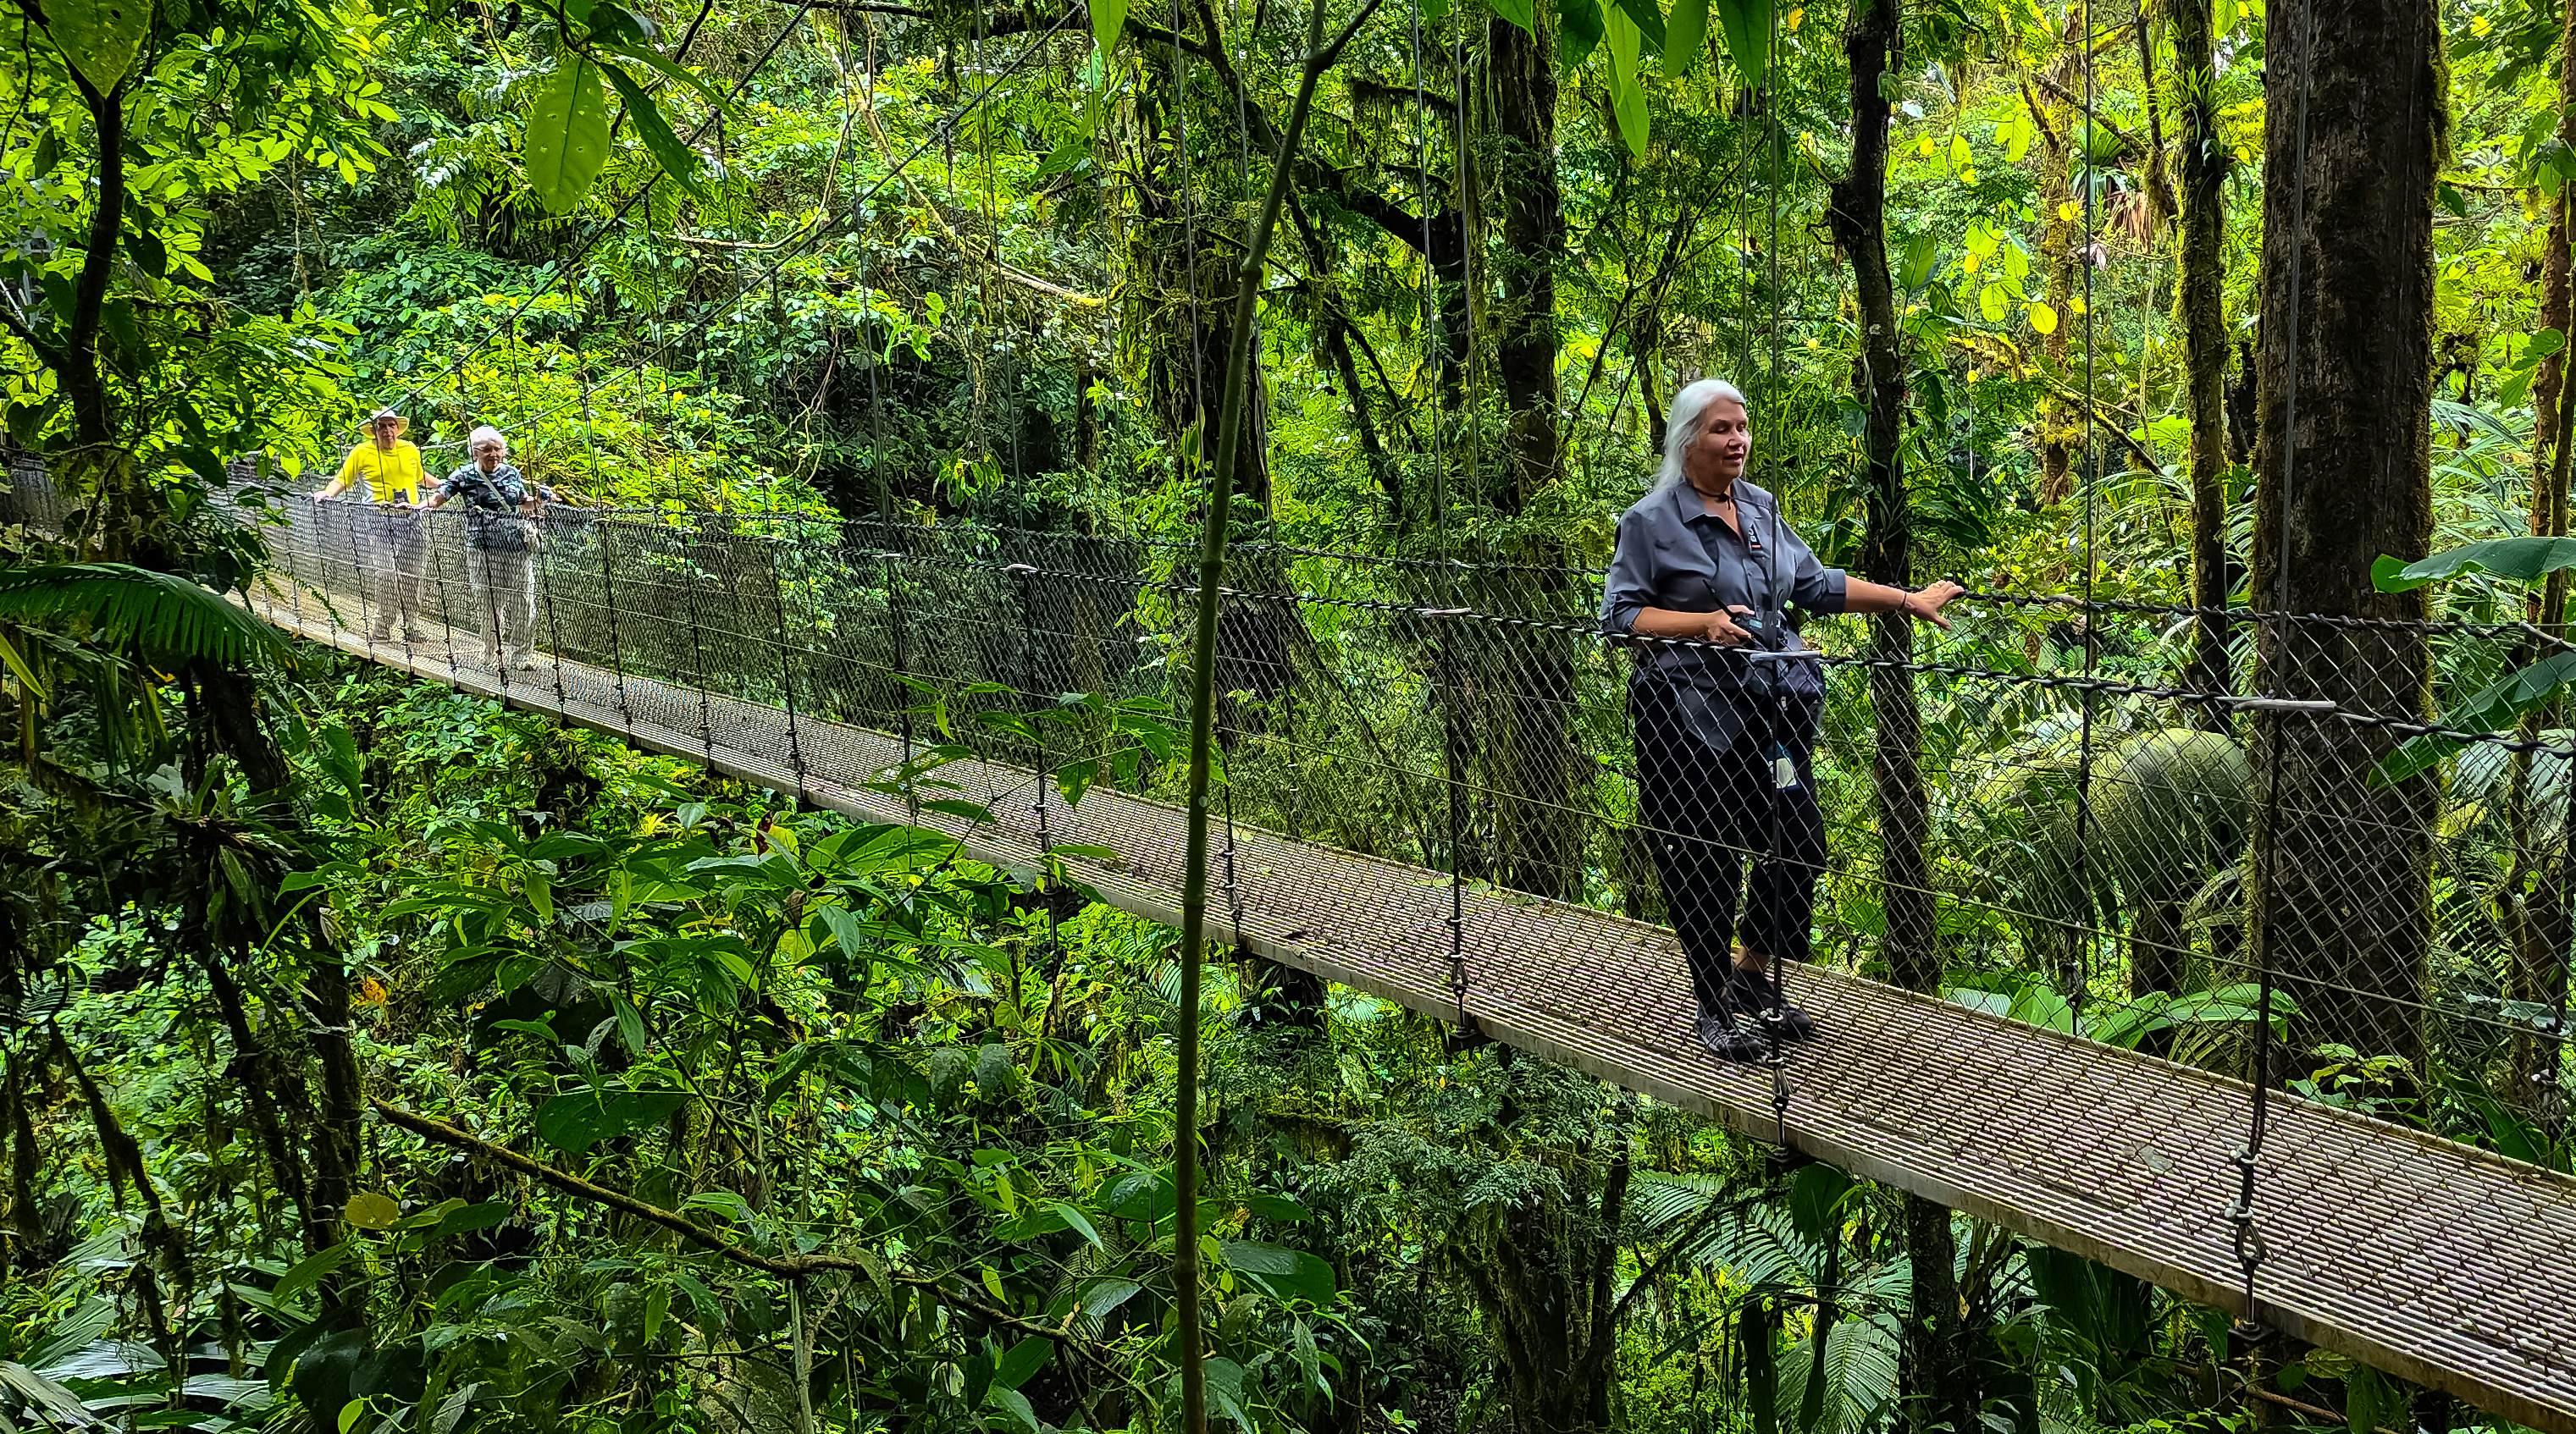 Hanging Bridges, Mistico Park, Costa Rica